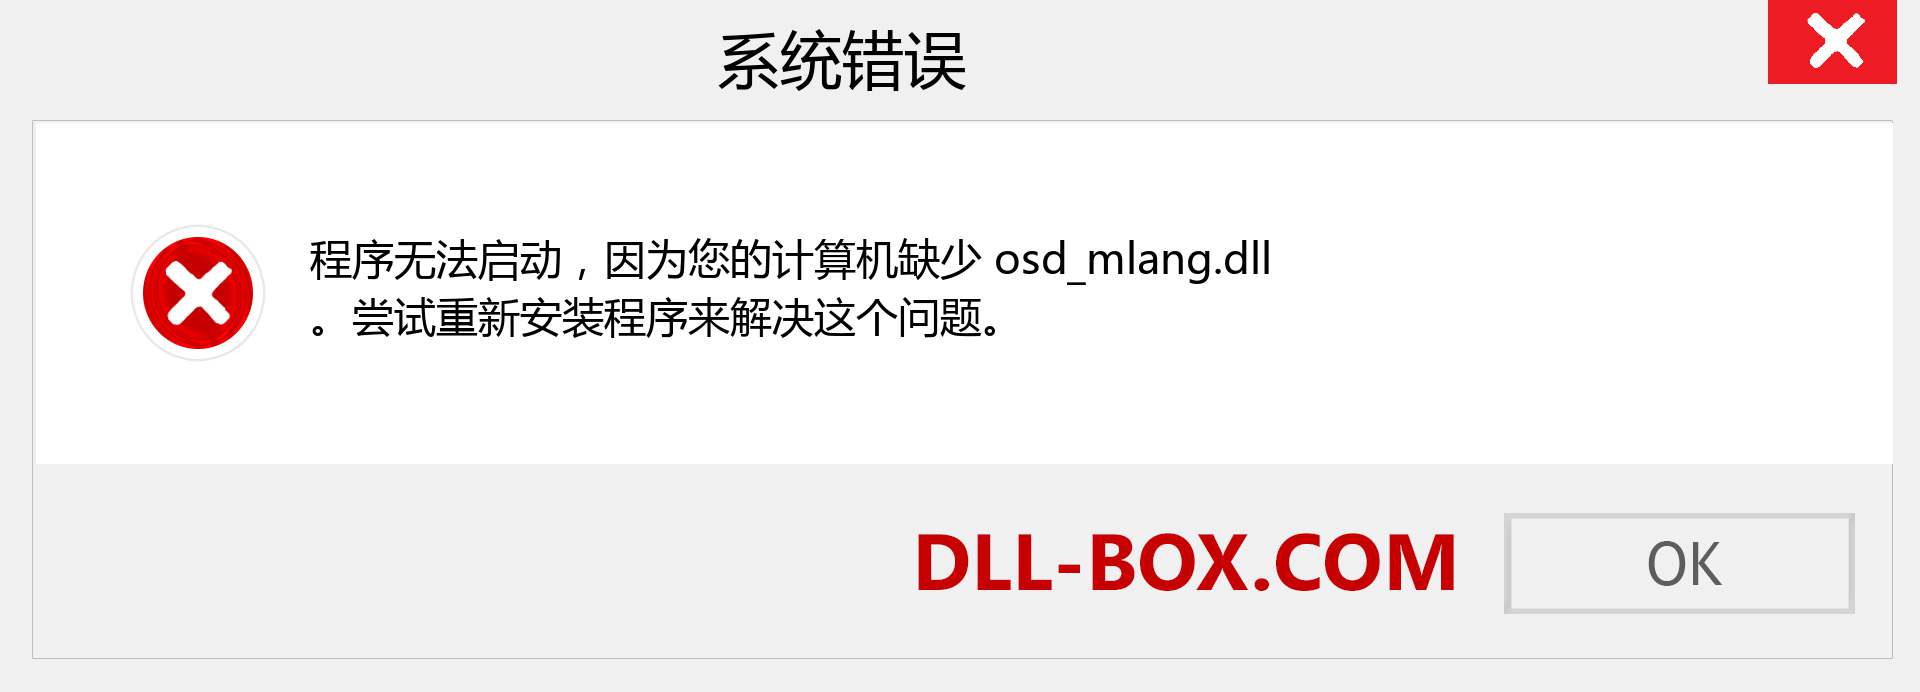 osd_mlang.dll 文件丢失？。 适用于 Windows 7、8、10 的下载 - 修复 Windows、照片、图像上的 osd_mlang dll 丢失错误